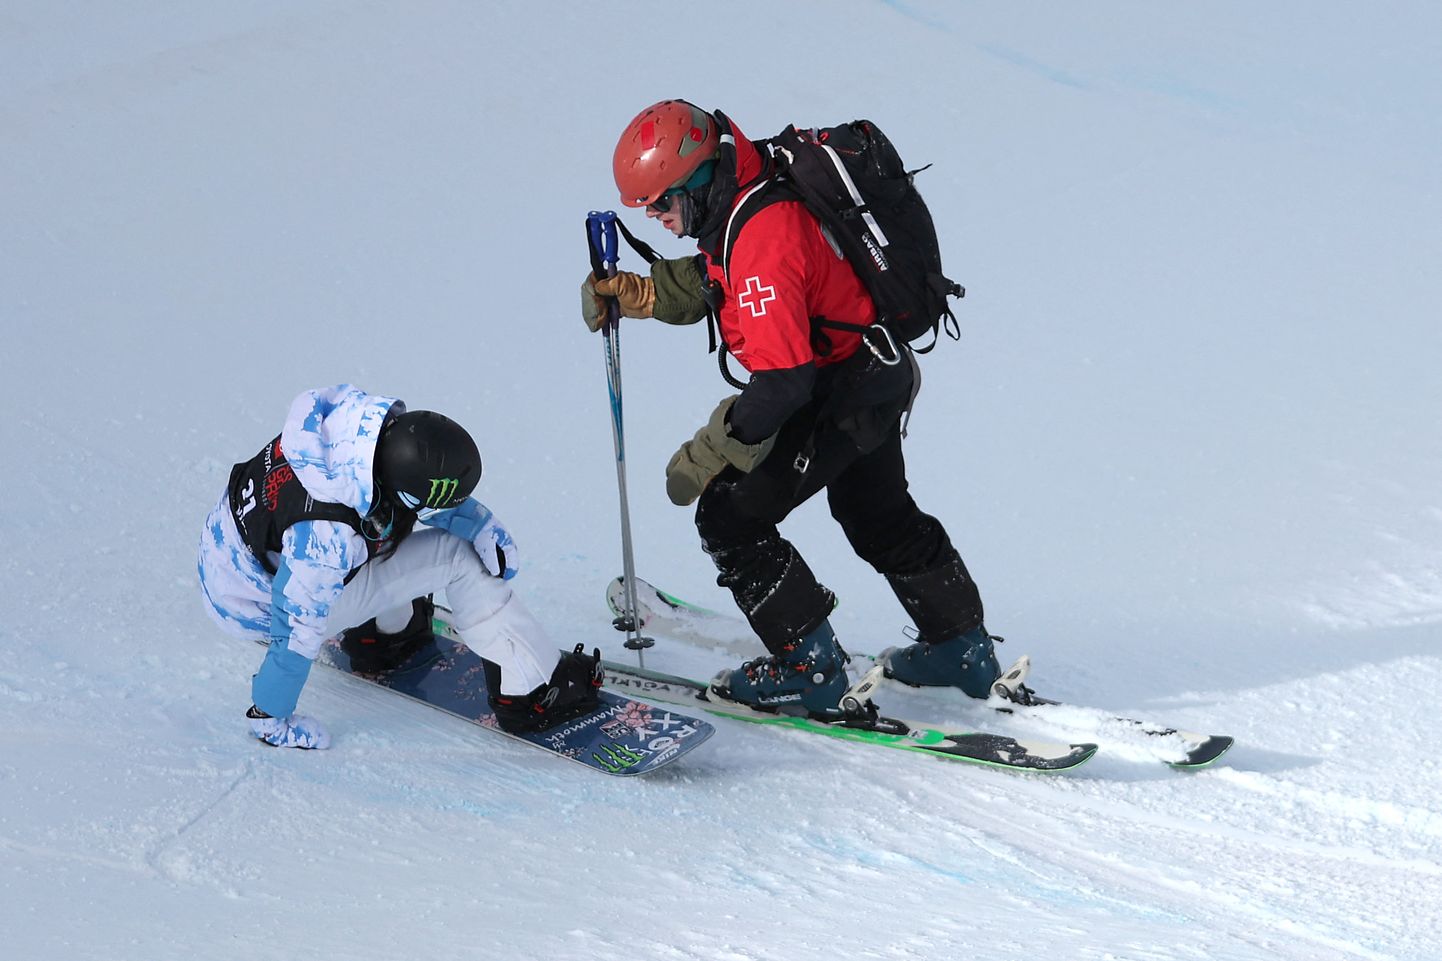 Медик поспешил на помощь упавшему сноубордисту. Иллюстративное фото.